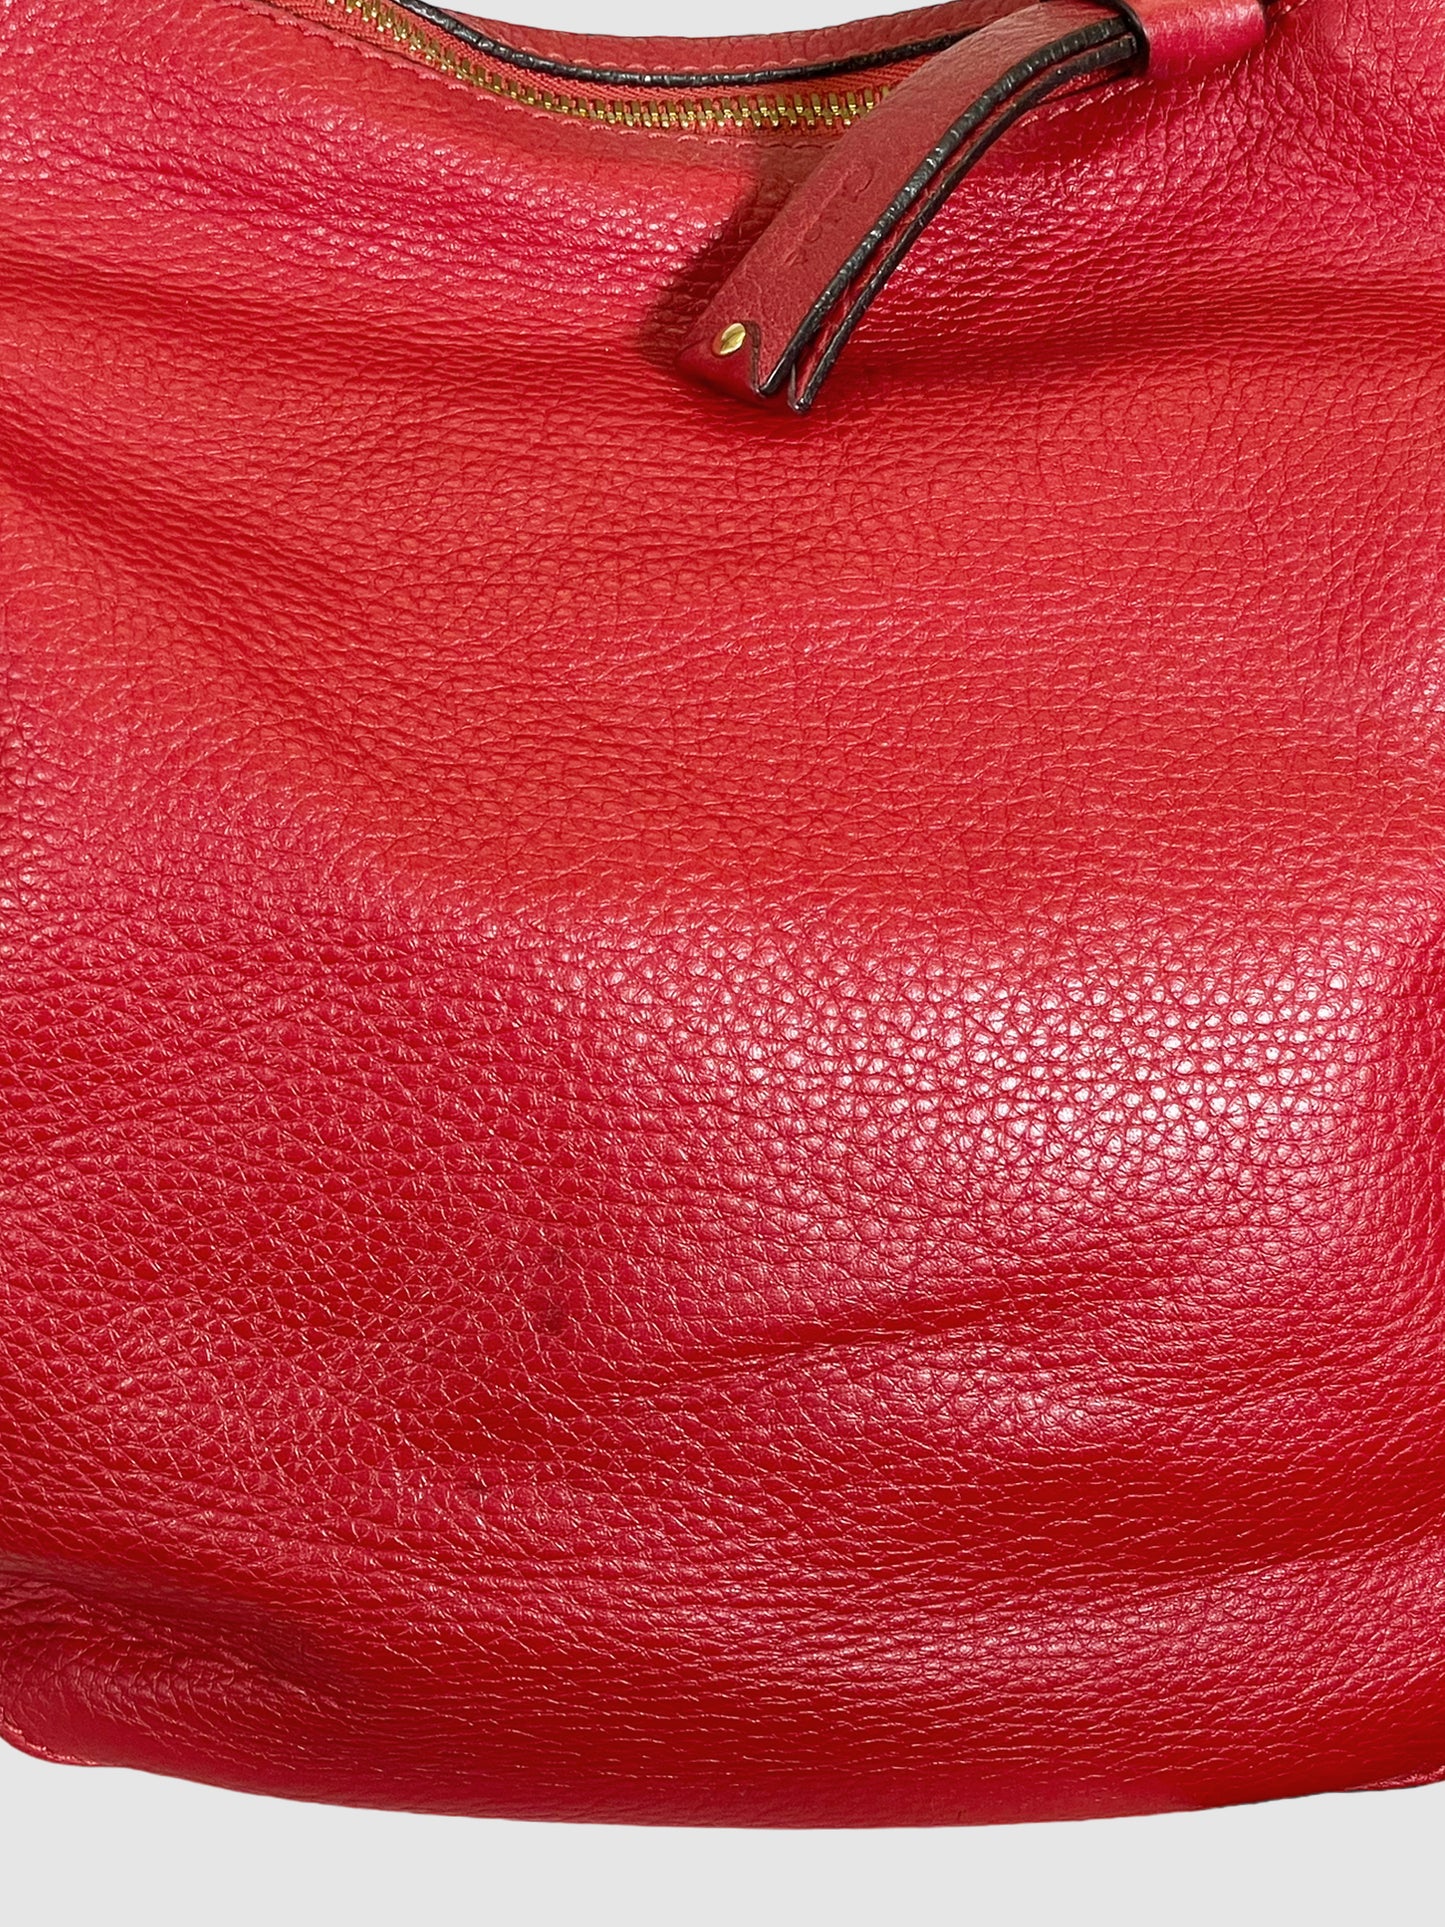 Leather Marcie Hobo Bag